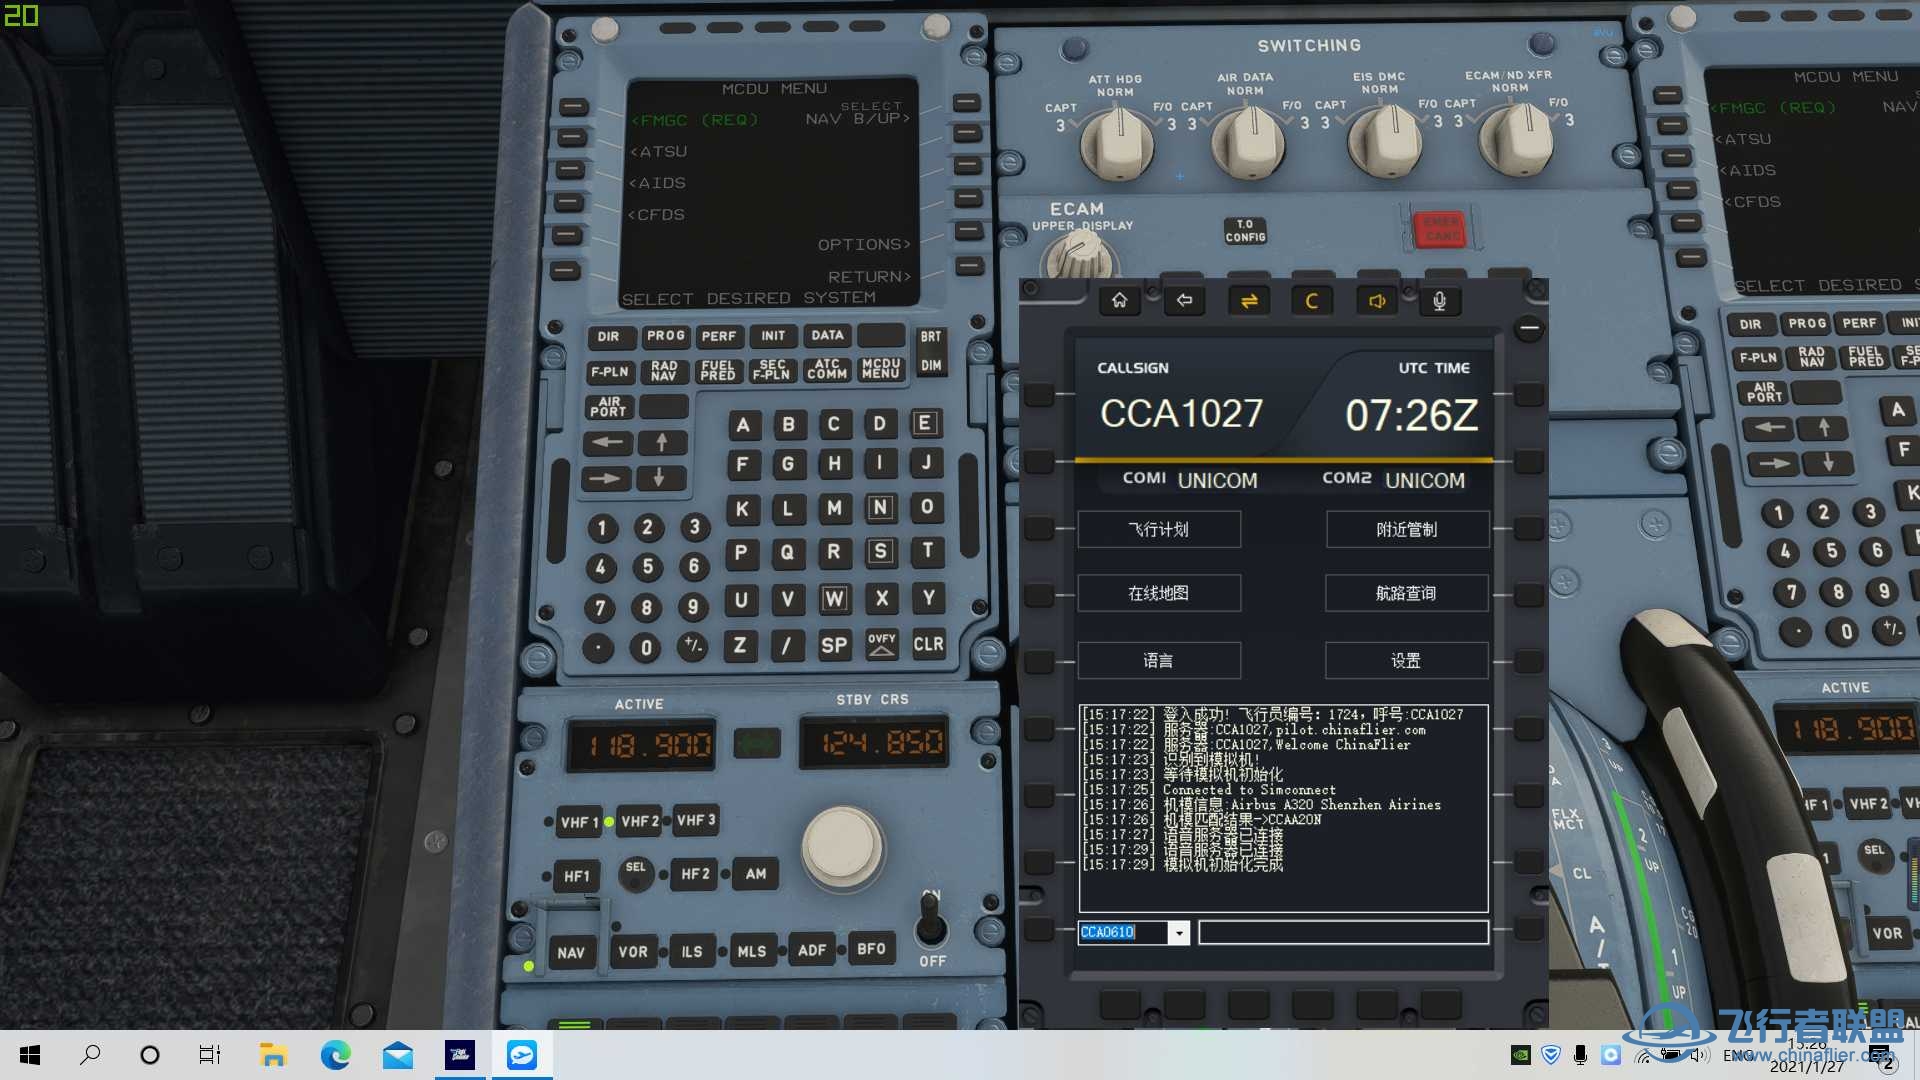 【求助】连飞软件COM1 COM2一直显示UNICOM-4776 